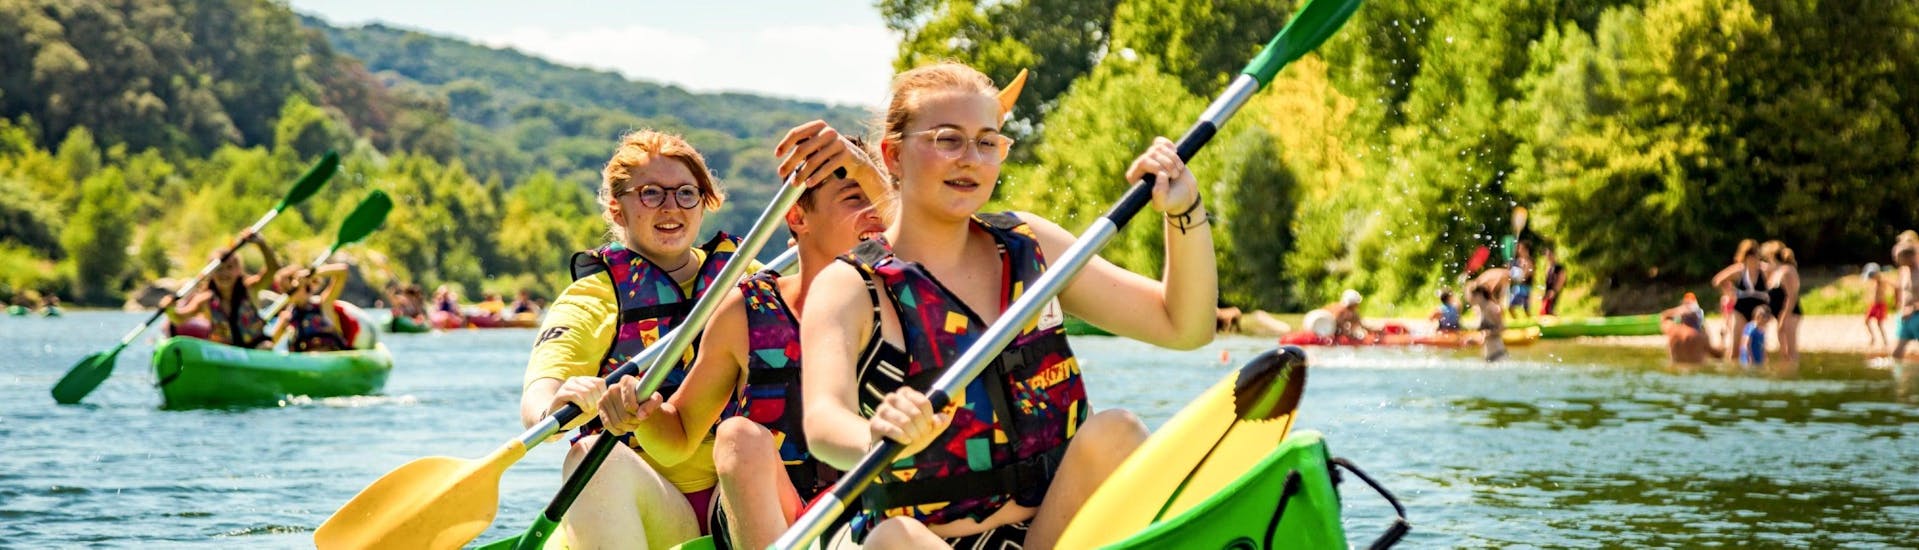 Tres amigos están aprovechando su alquiler de canoas de 8 km por el Pont du Gard para remar en el Gardon y pasar un buen rato, gracias a Kayak Vert.